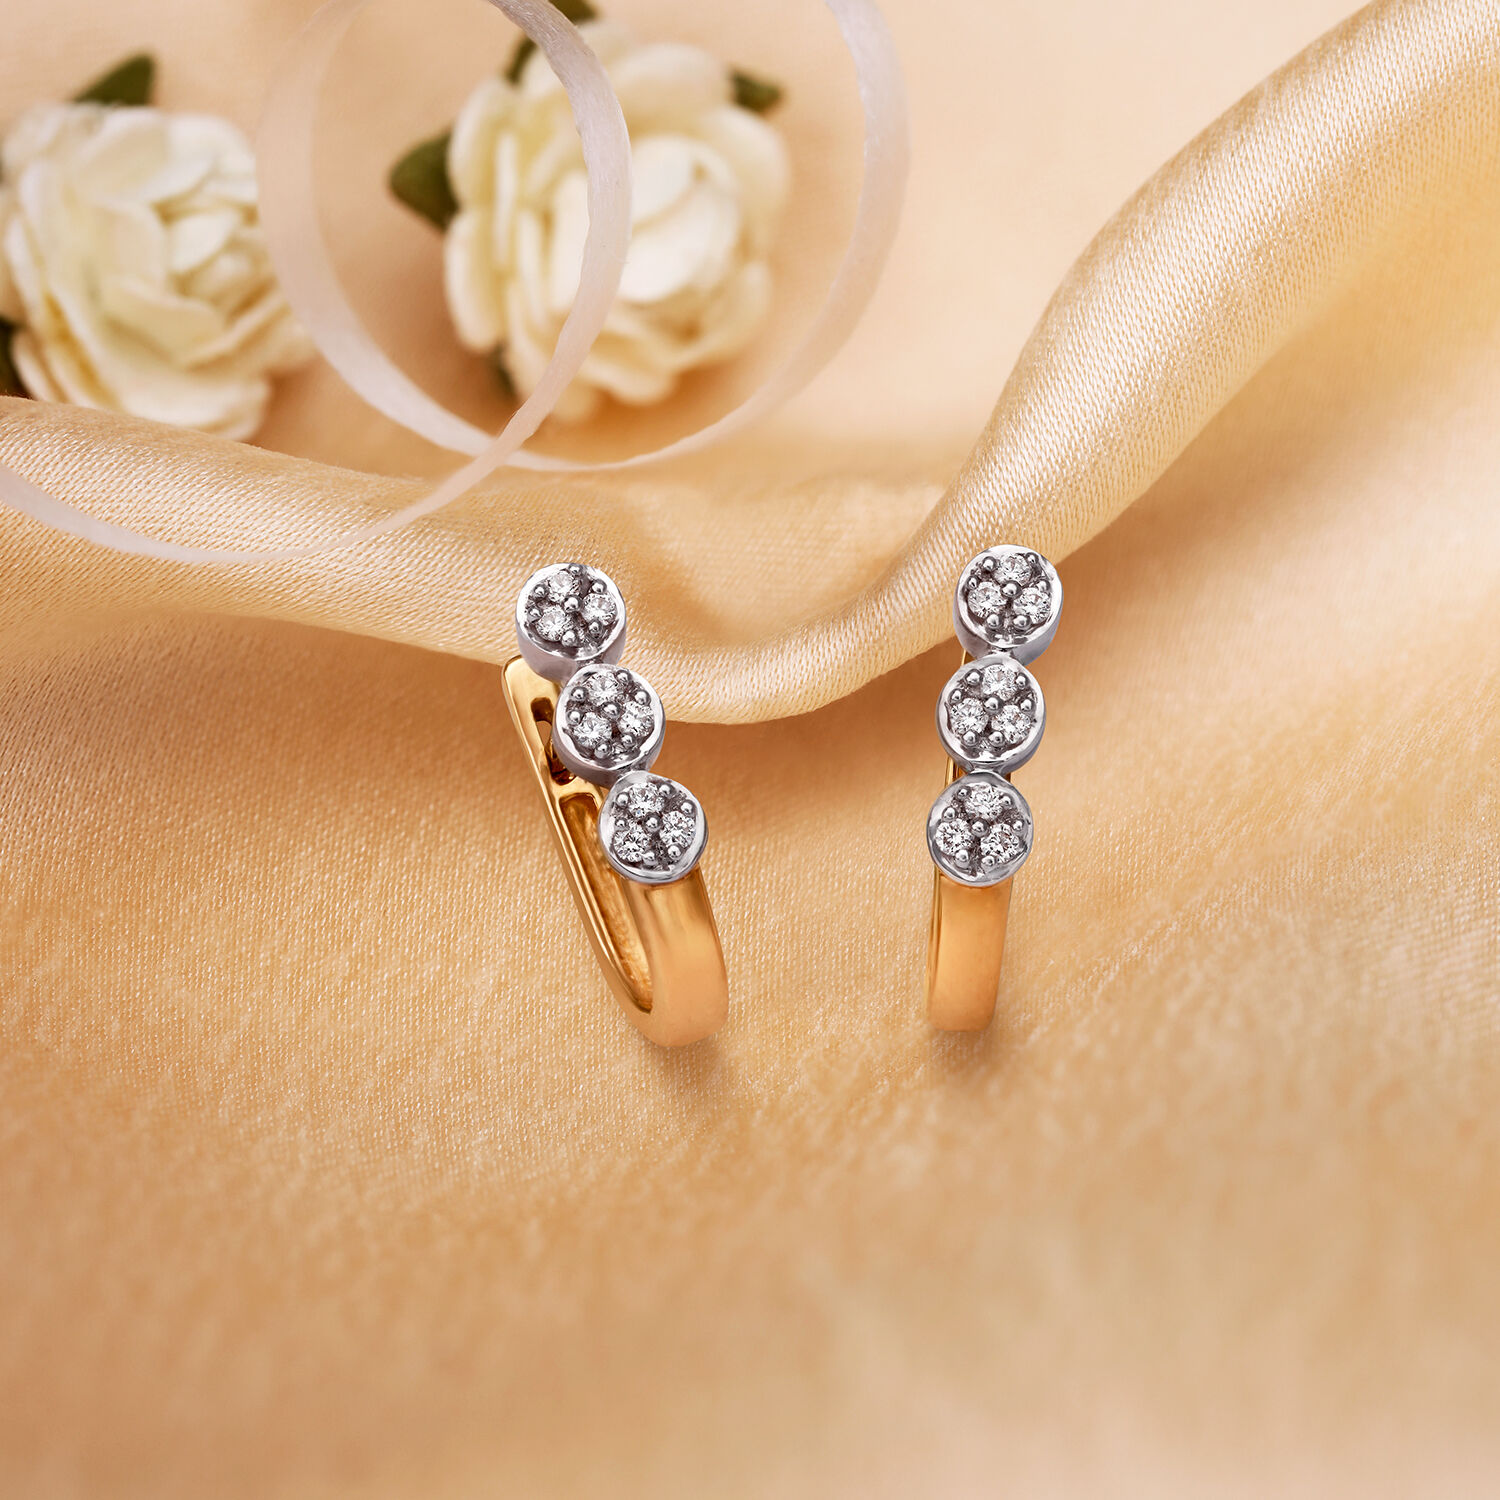 Details more than 166 simple diamond hoop earrings super hot